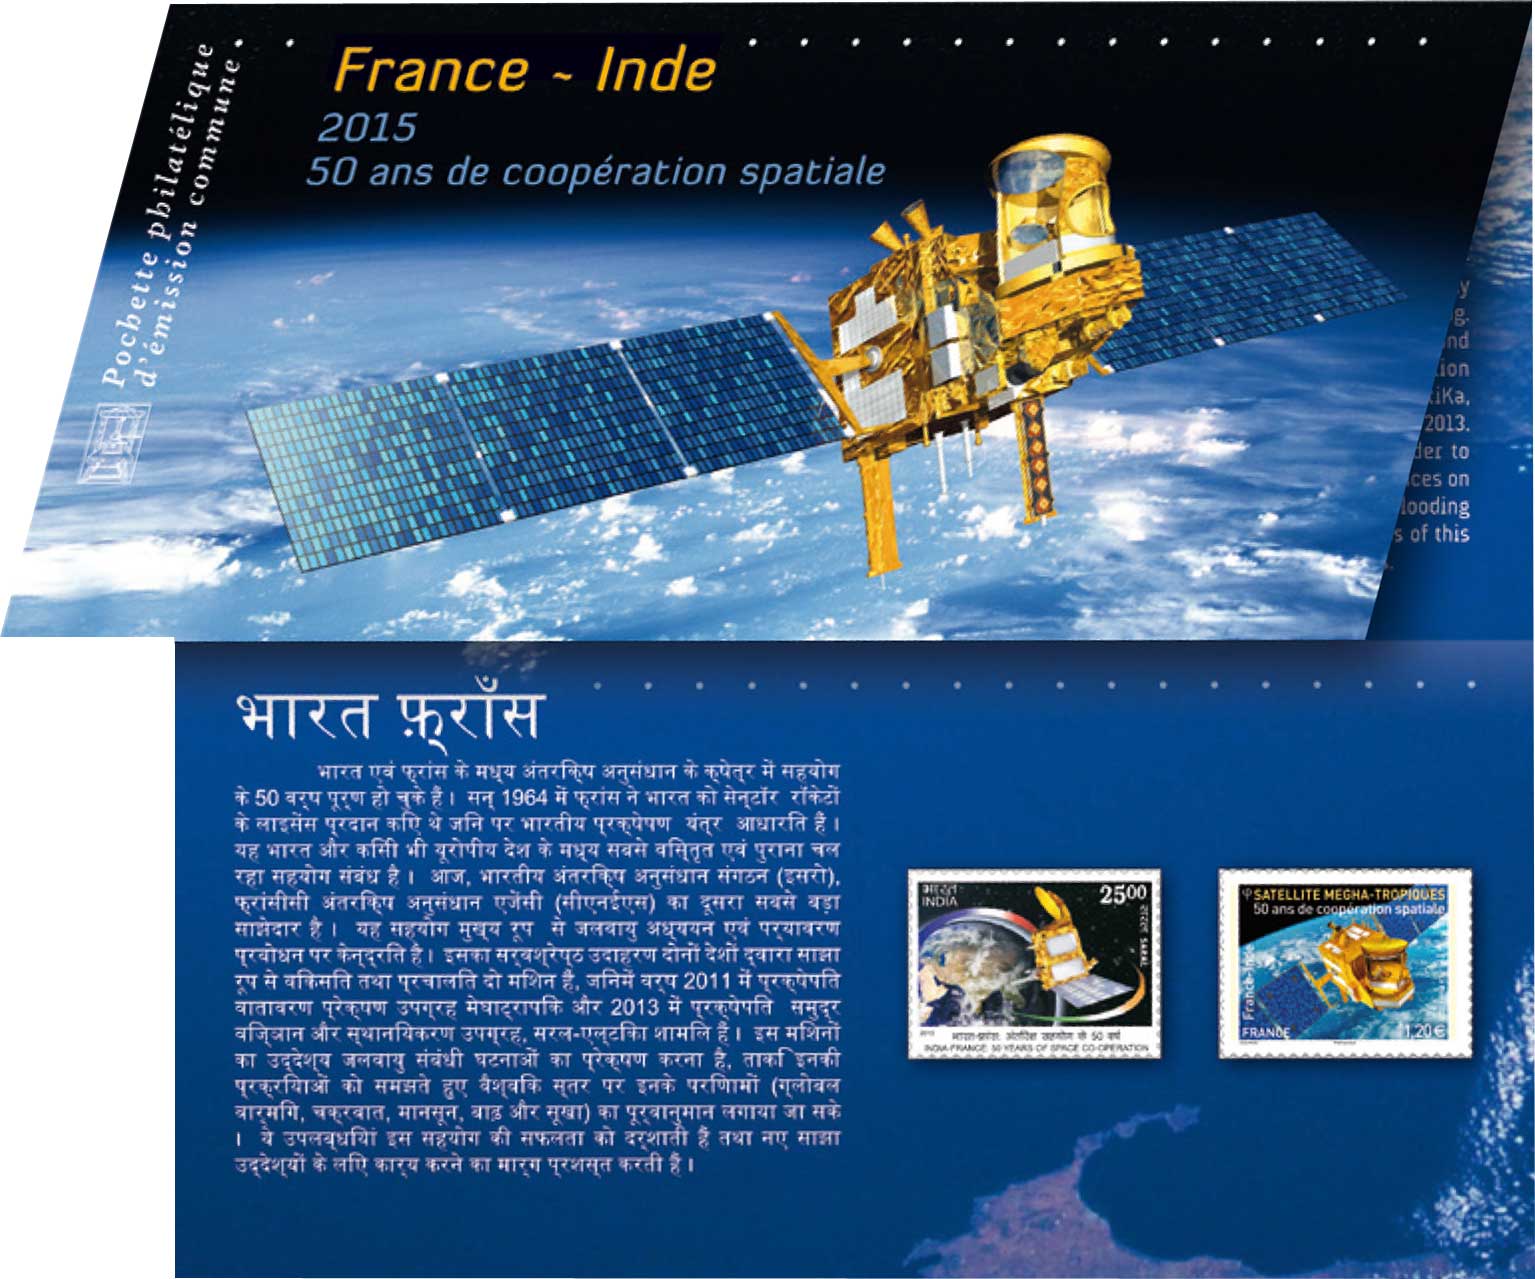 France - Inde 50 ans de coopération spatiale